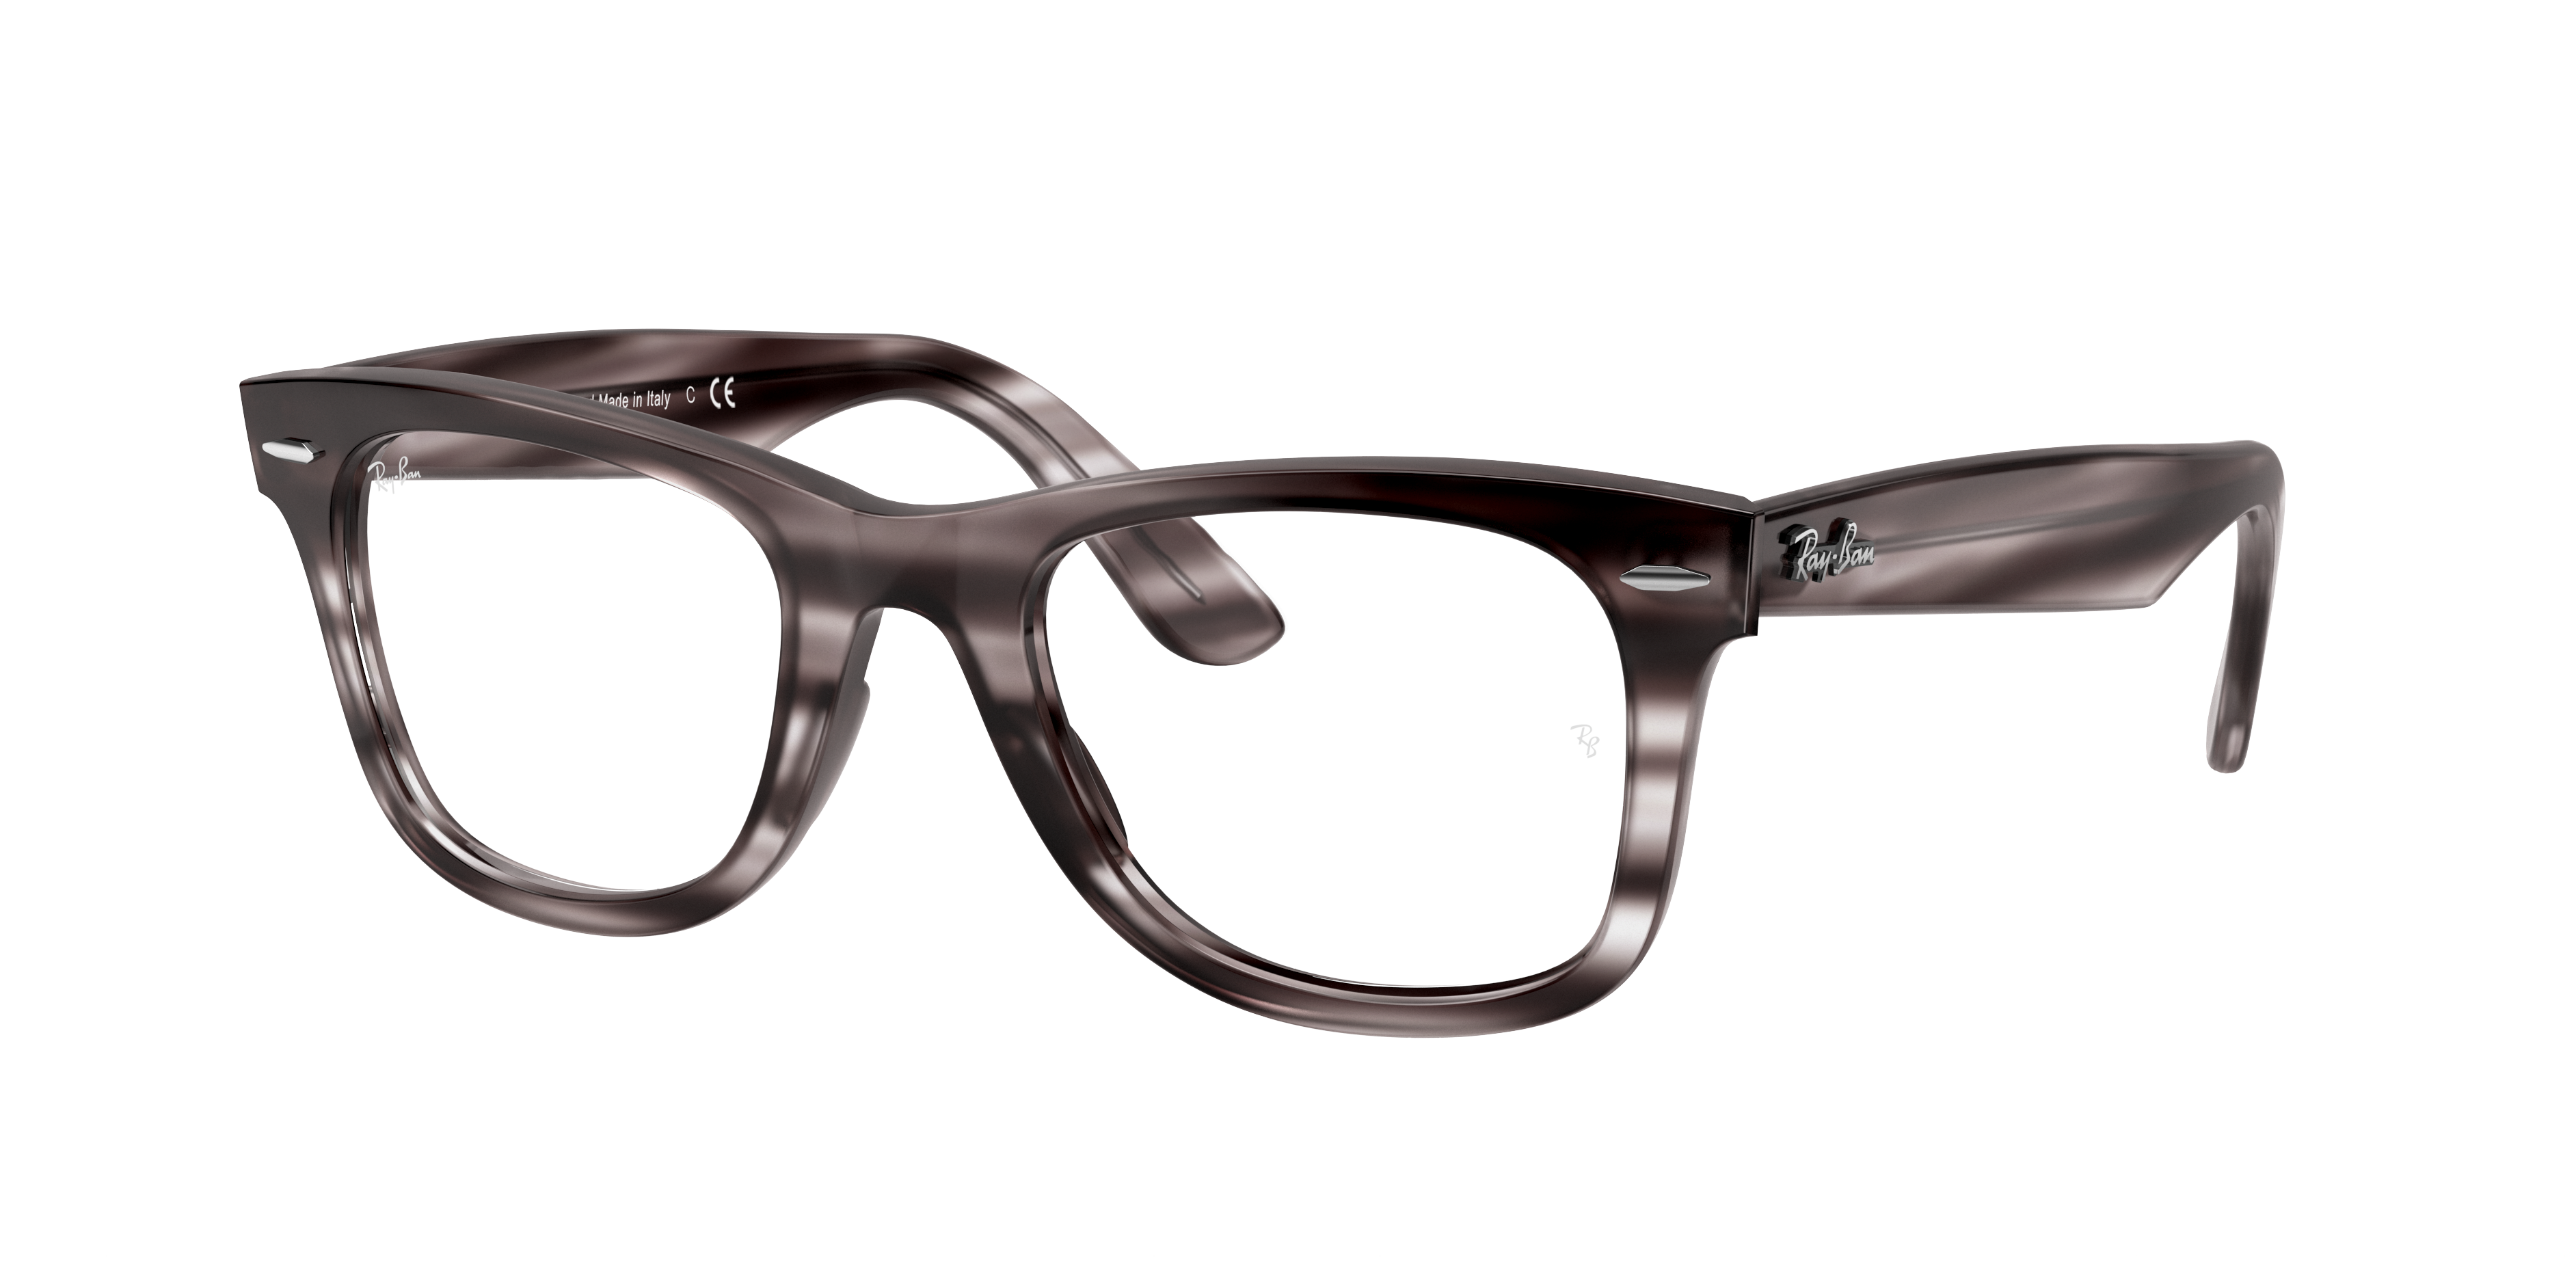 Ray-Ban eyeglasses Wayfarer Ease Optics 